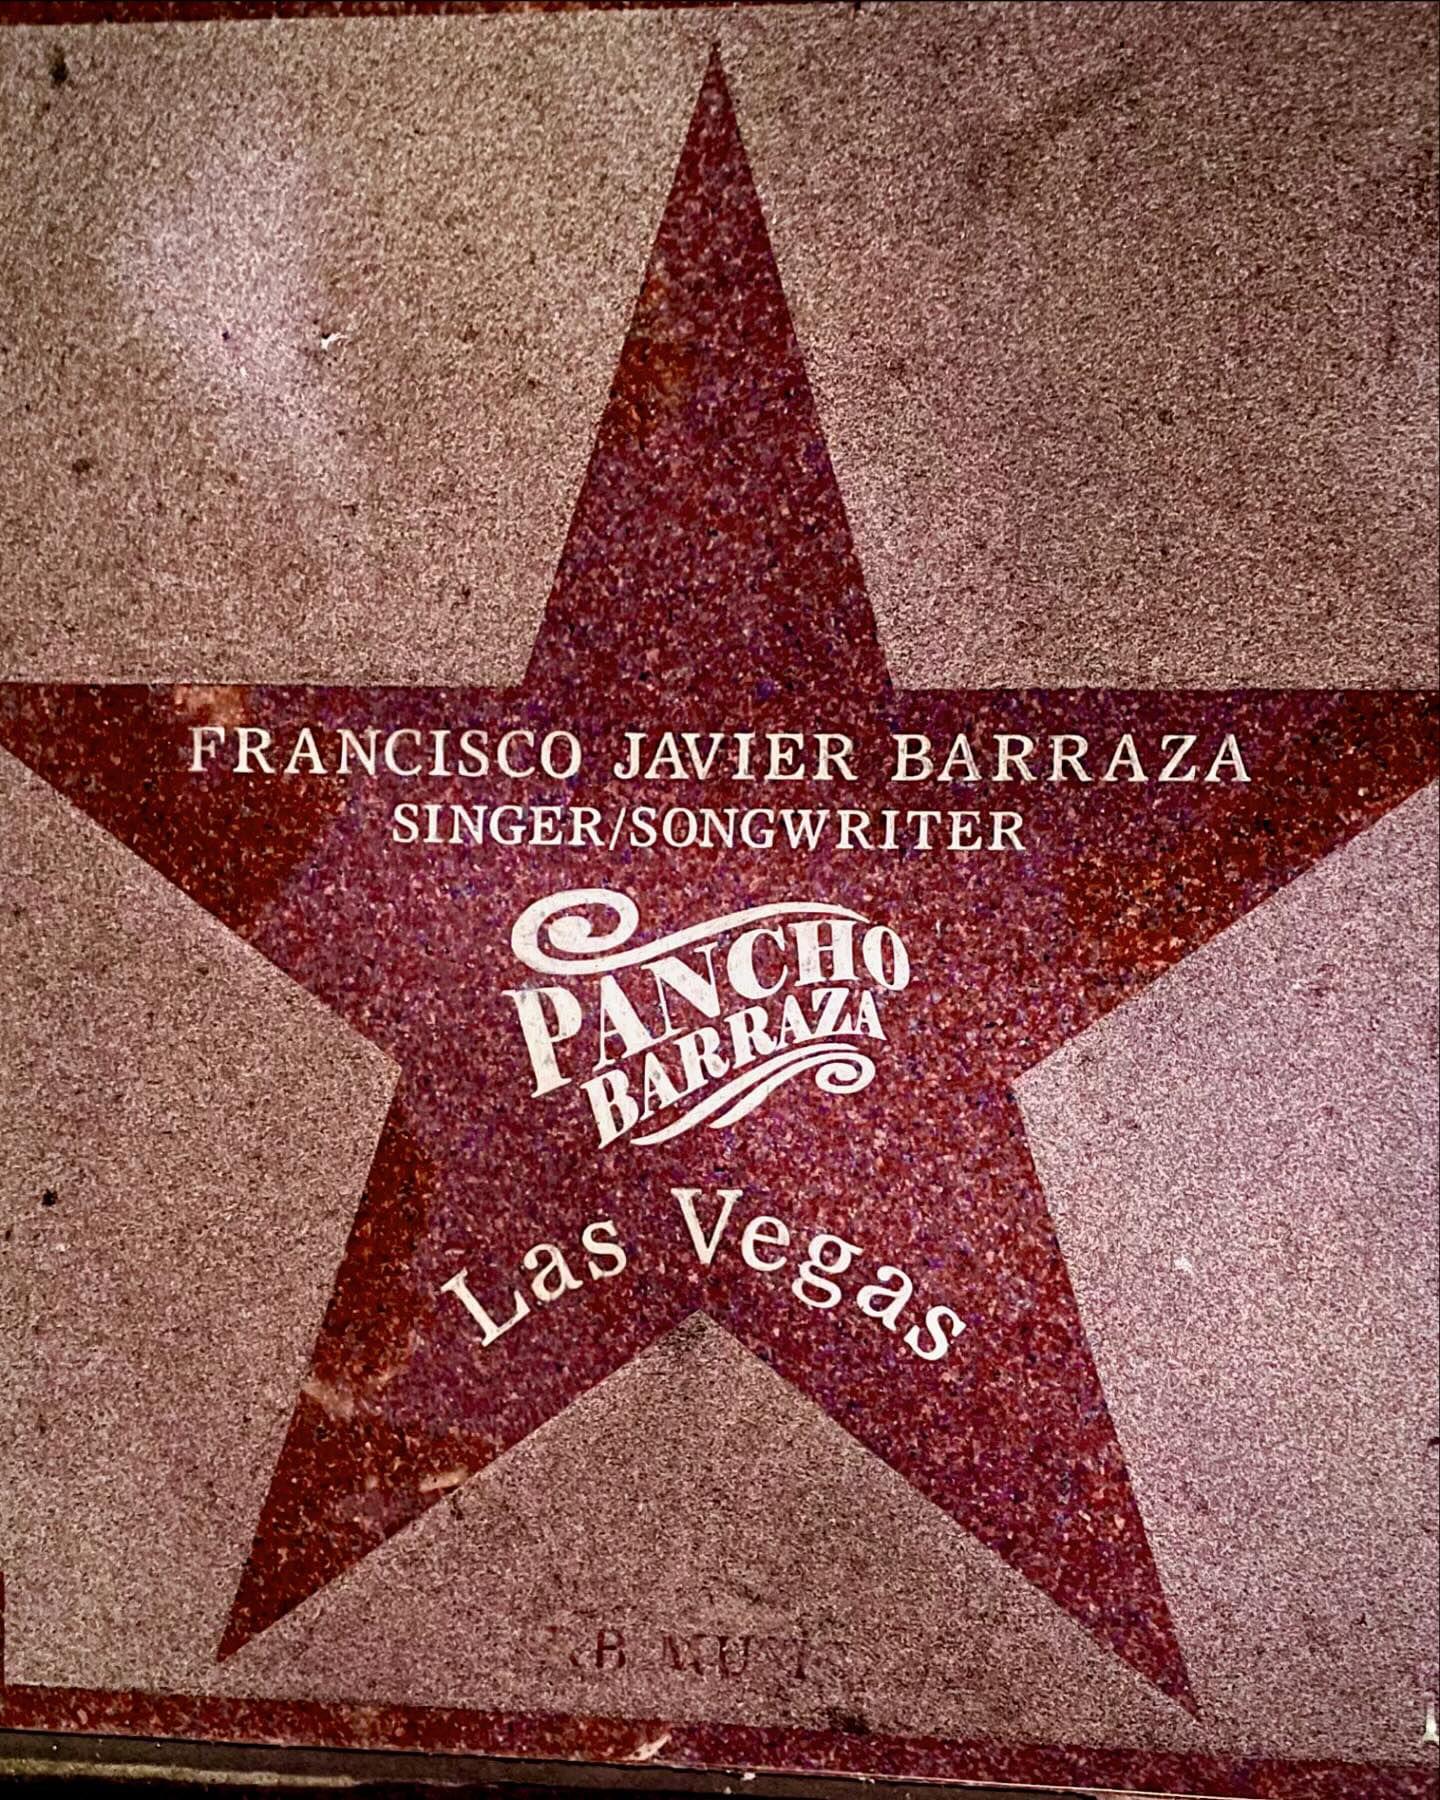 $!La estrella número 119 del Paseo de la Fama de Las Vegas tiene el nombre de Pancho Barraza.